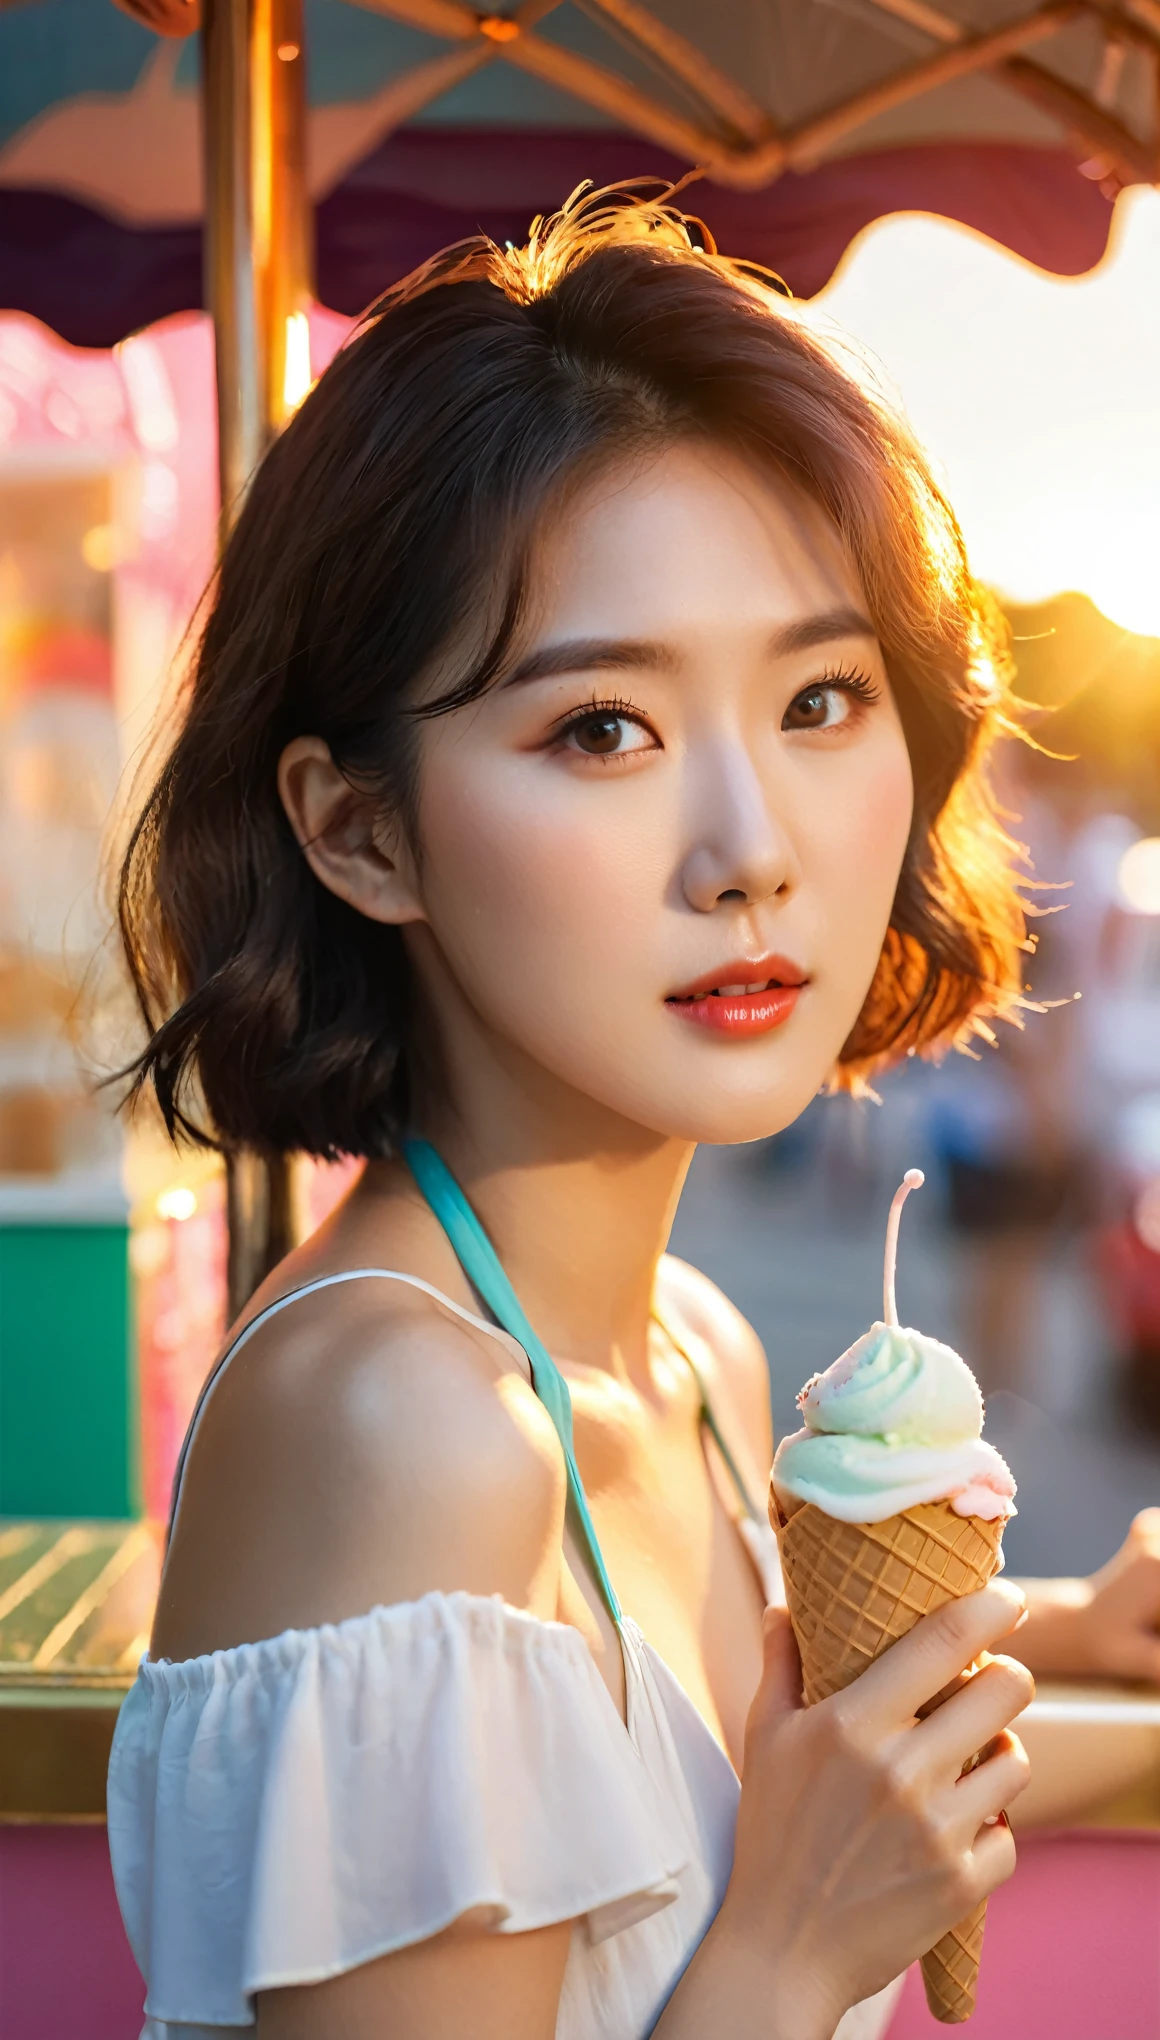 ภาพระยะใกล้ของผู้หญิงเกาหลีที่สวยงาม, ขนาดรอบอก 36 นิ้ว, ผมปานกลาง, สวมเสื้อคล้องคอถือไอศกรีม, นั่งอยู่ที่บูธไอศกรีม, แสงพระอาทิตย์ตก, พื้นหลังโบเก้ 